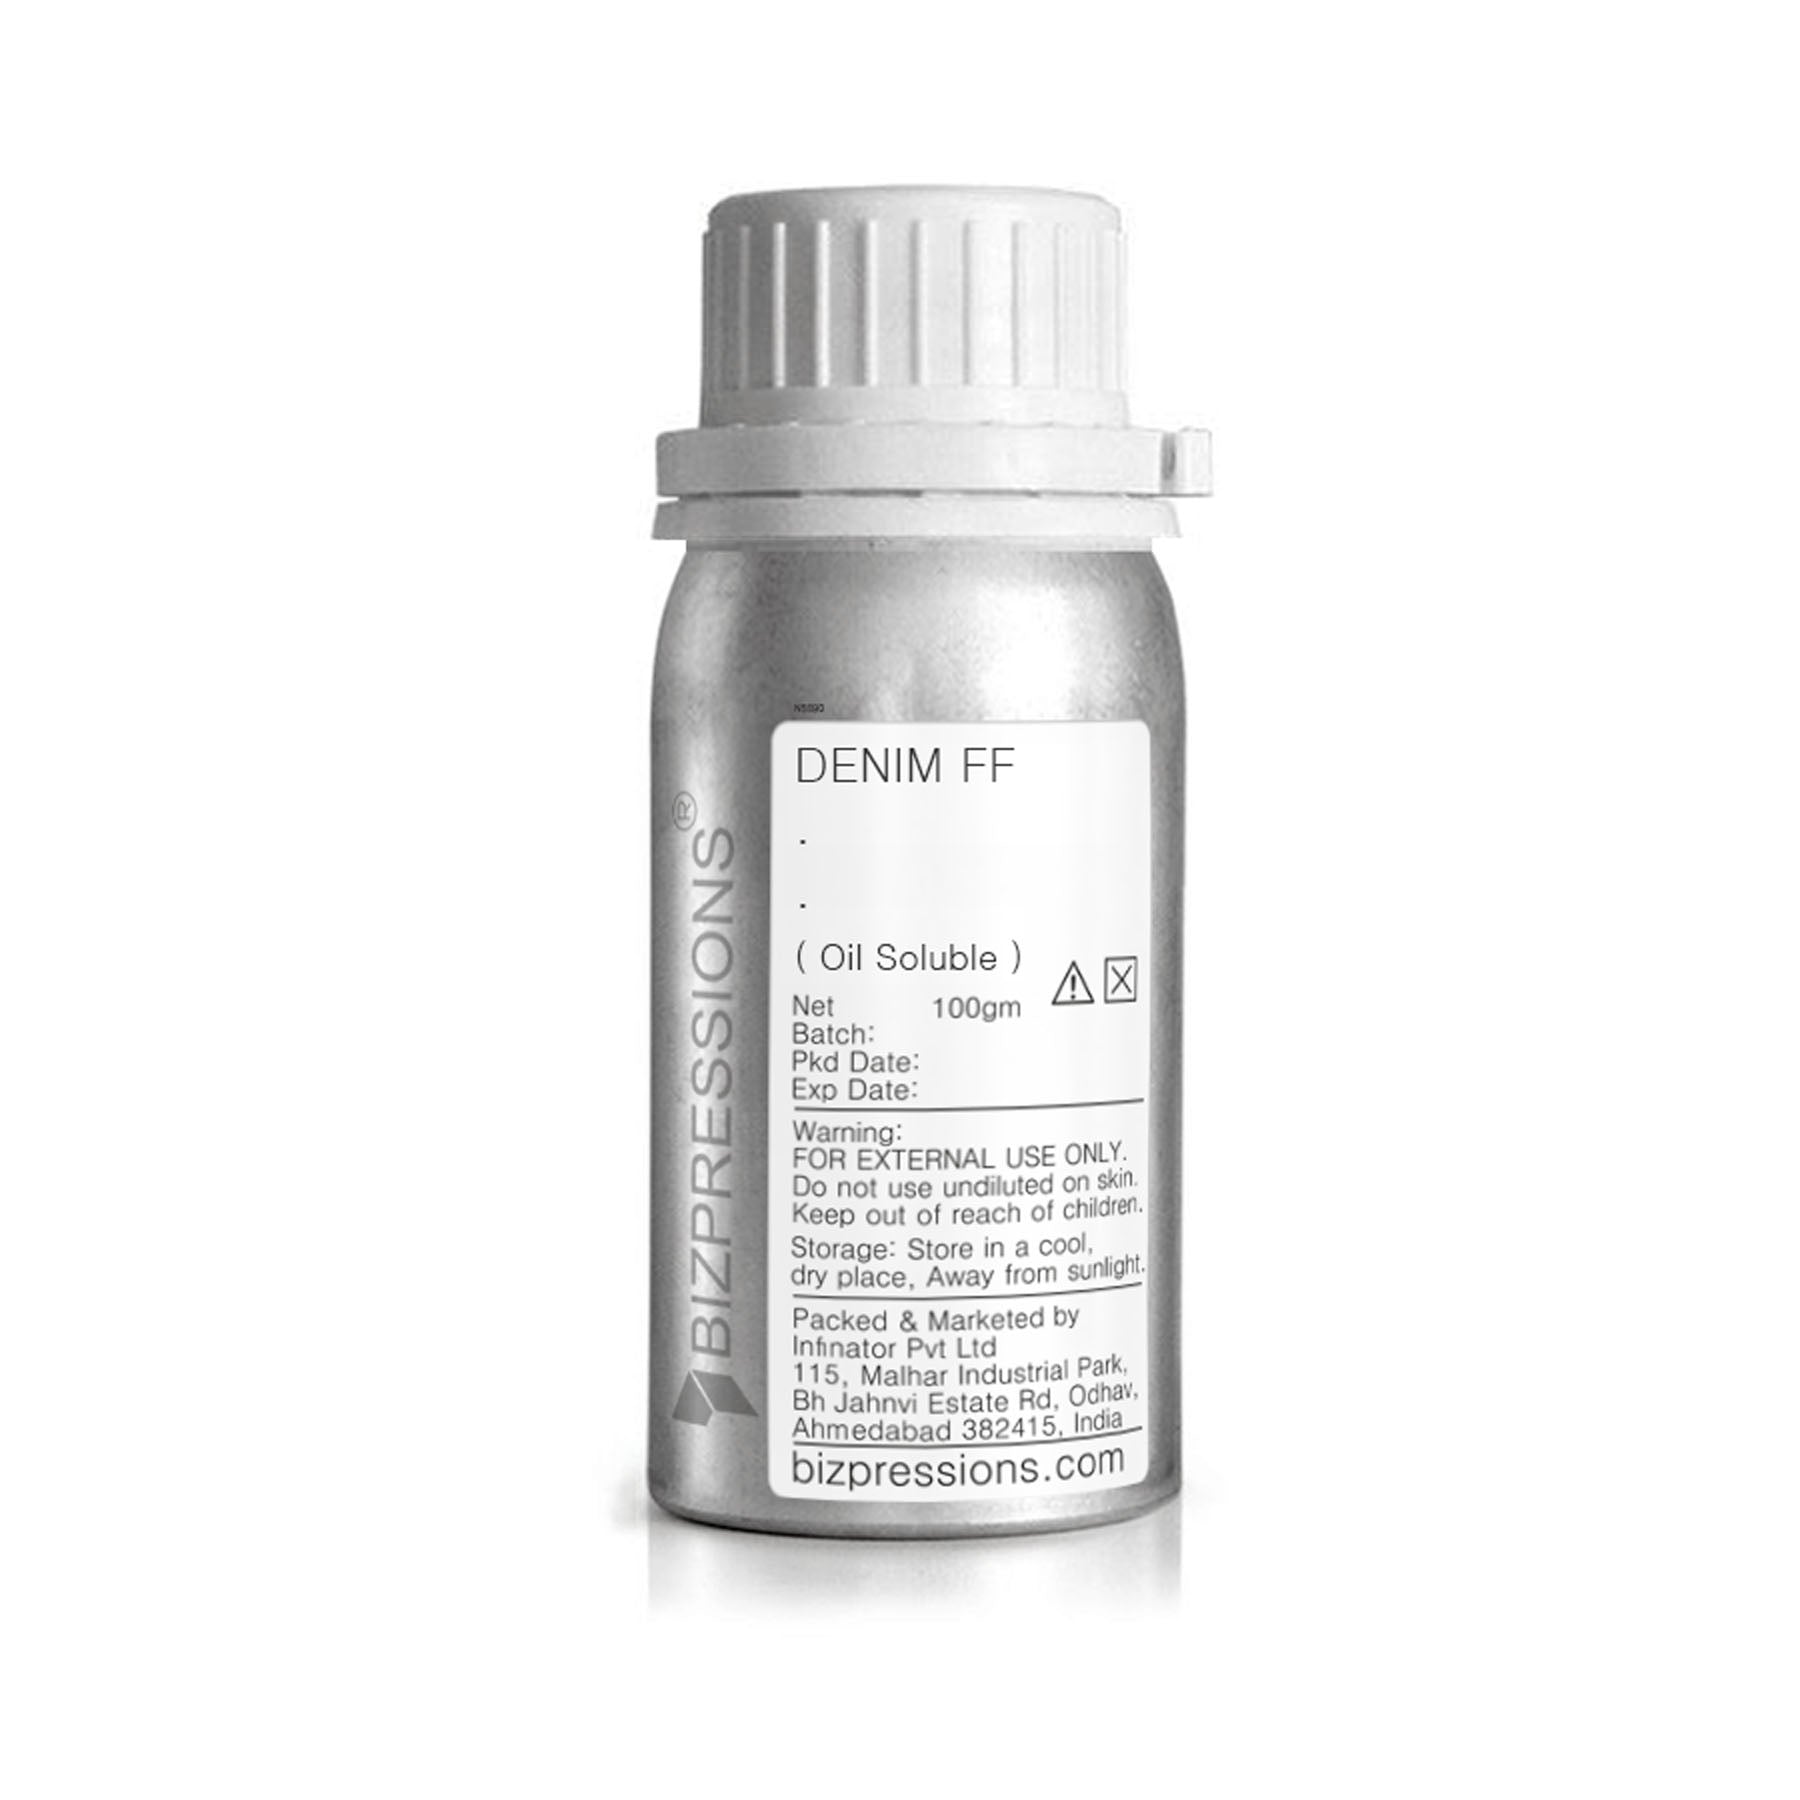 DENIM FF - Fragrance ( Oil Soluble ) - 100 gm